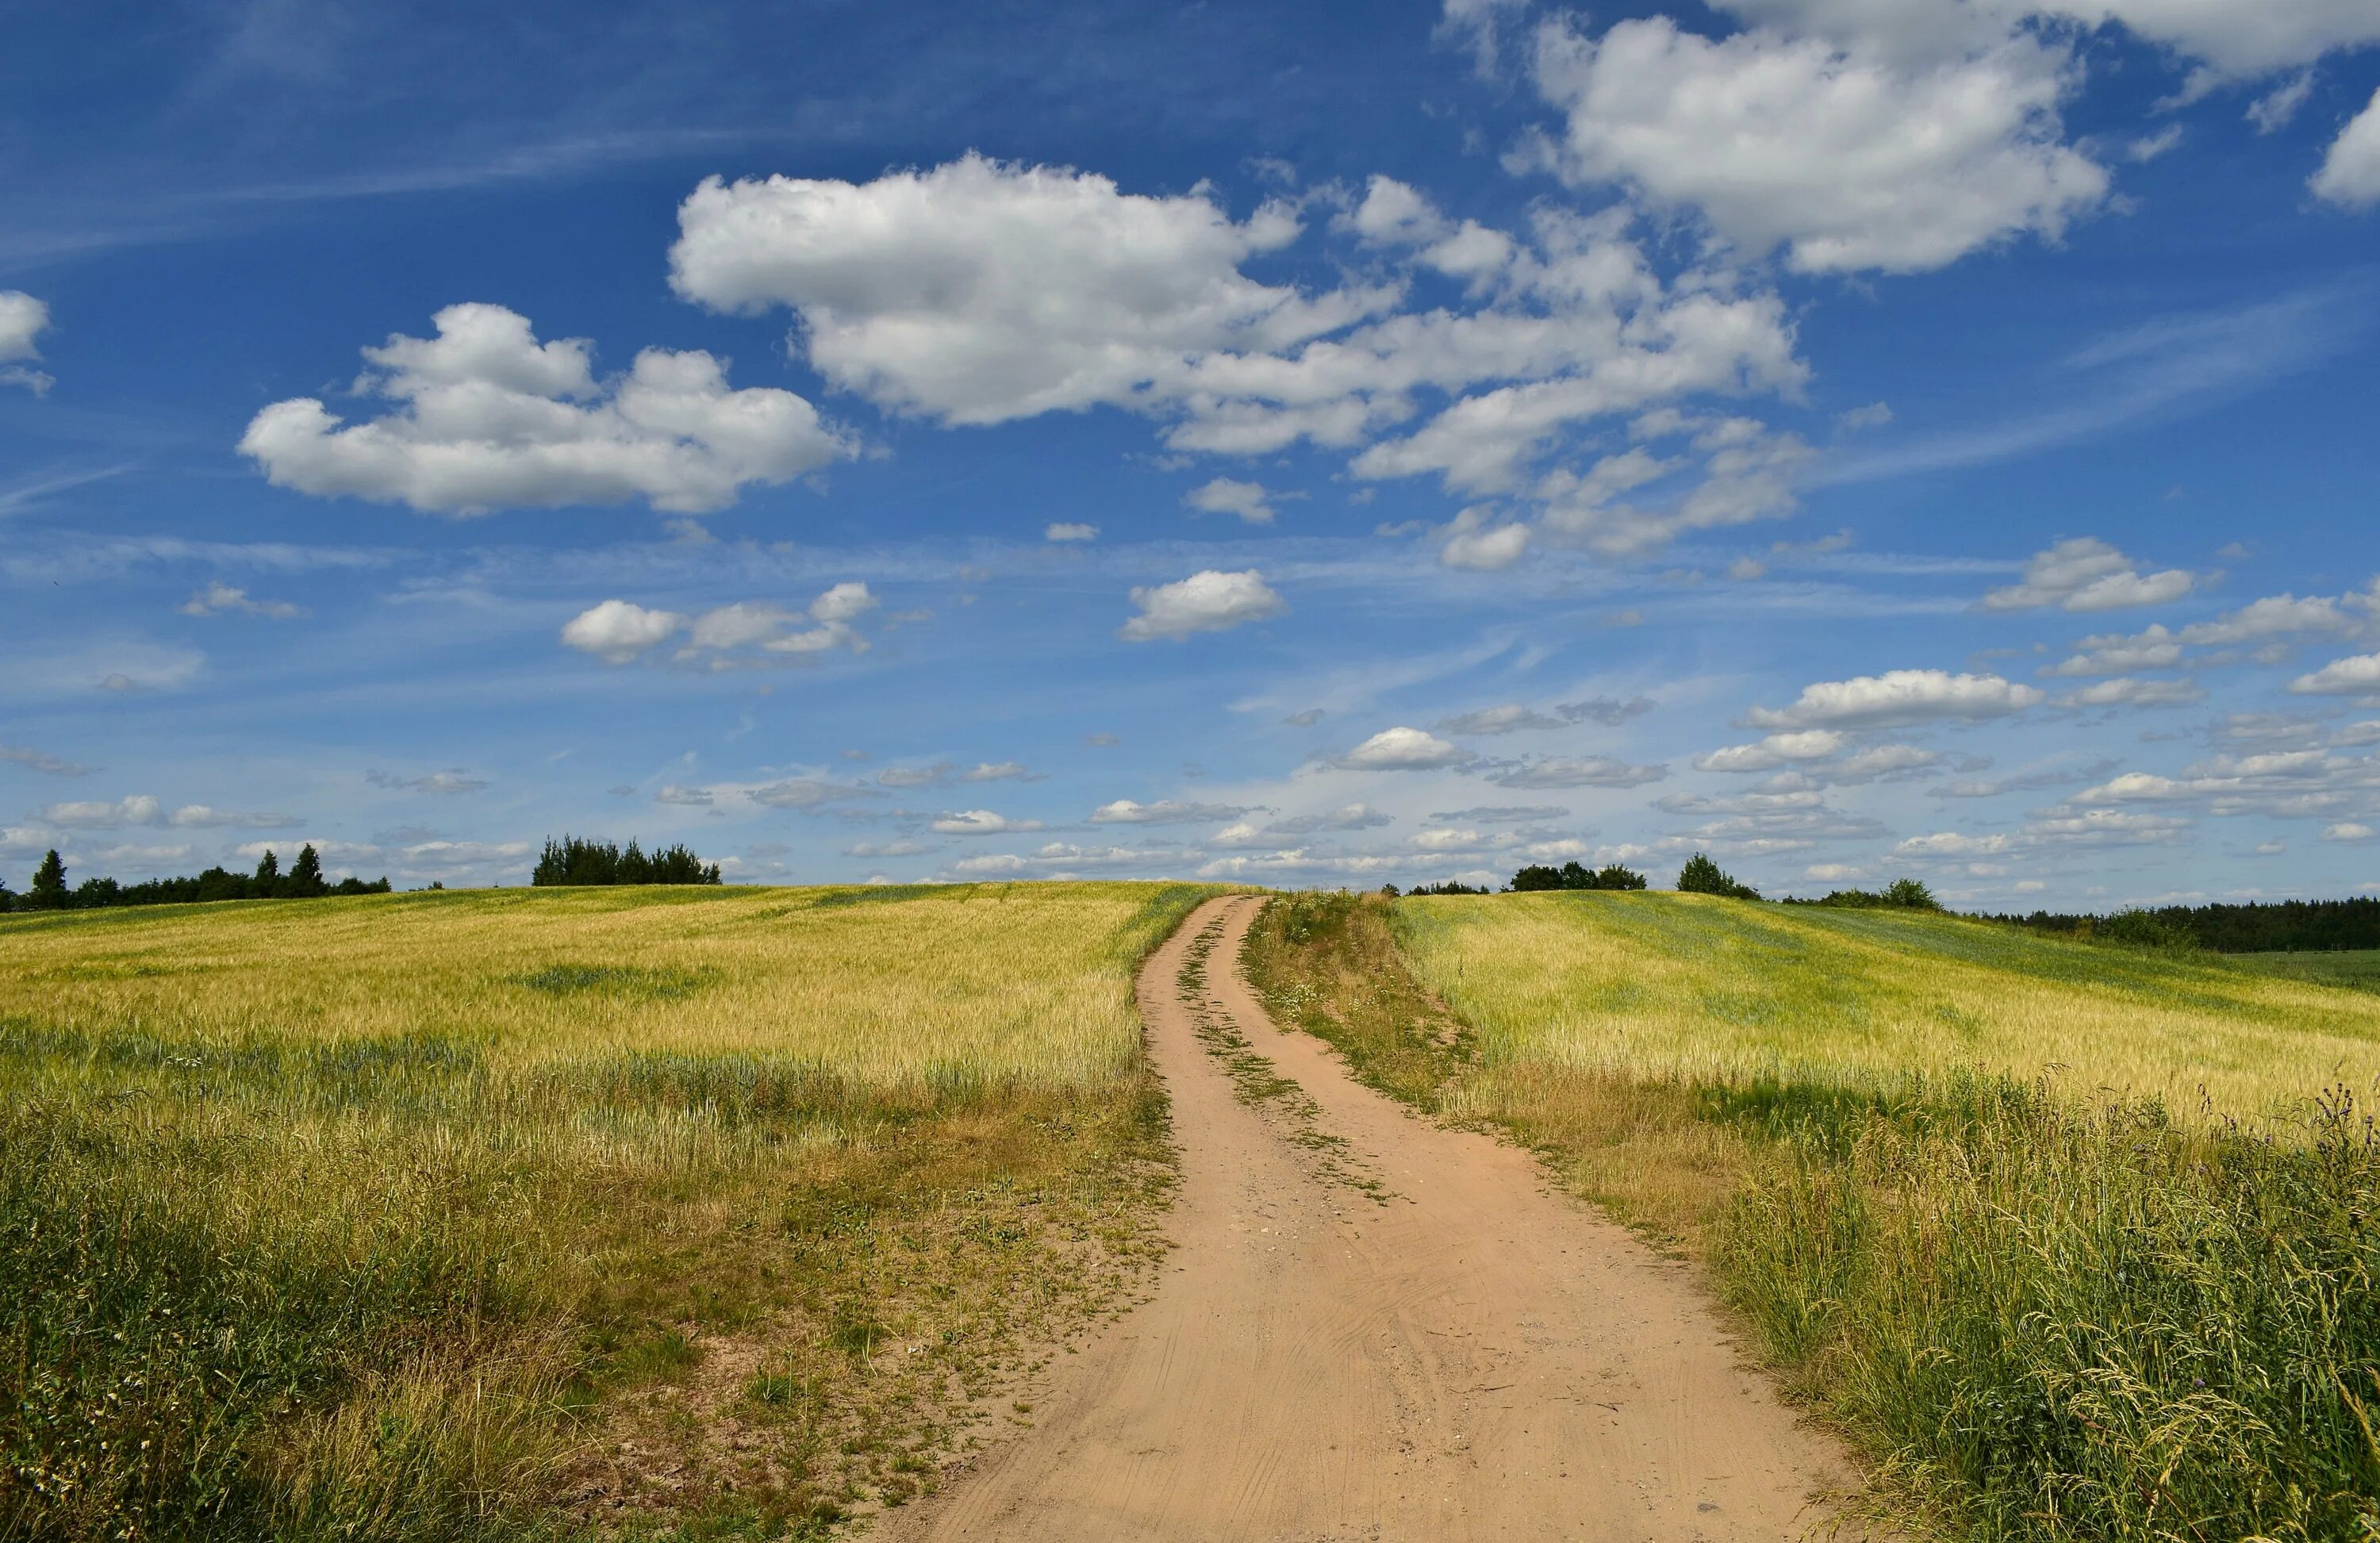 Горизонт линия горизонта. Пейзаж с линией горизонта. Пейзаж с низкой линией горизонта. Белорусские поля. Беларусь поля лето.